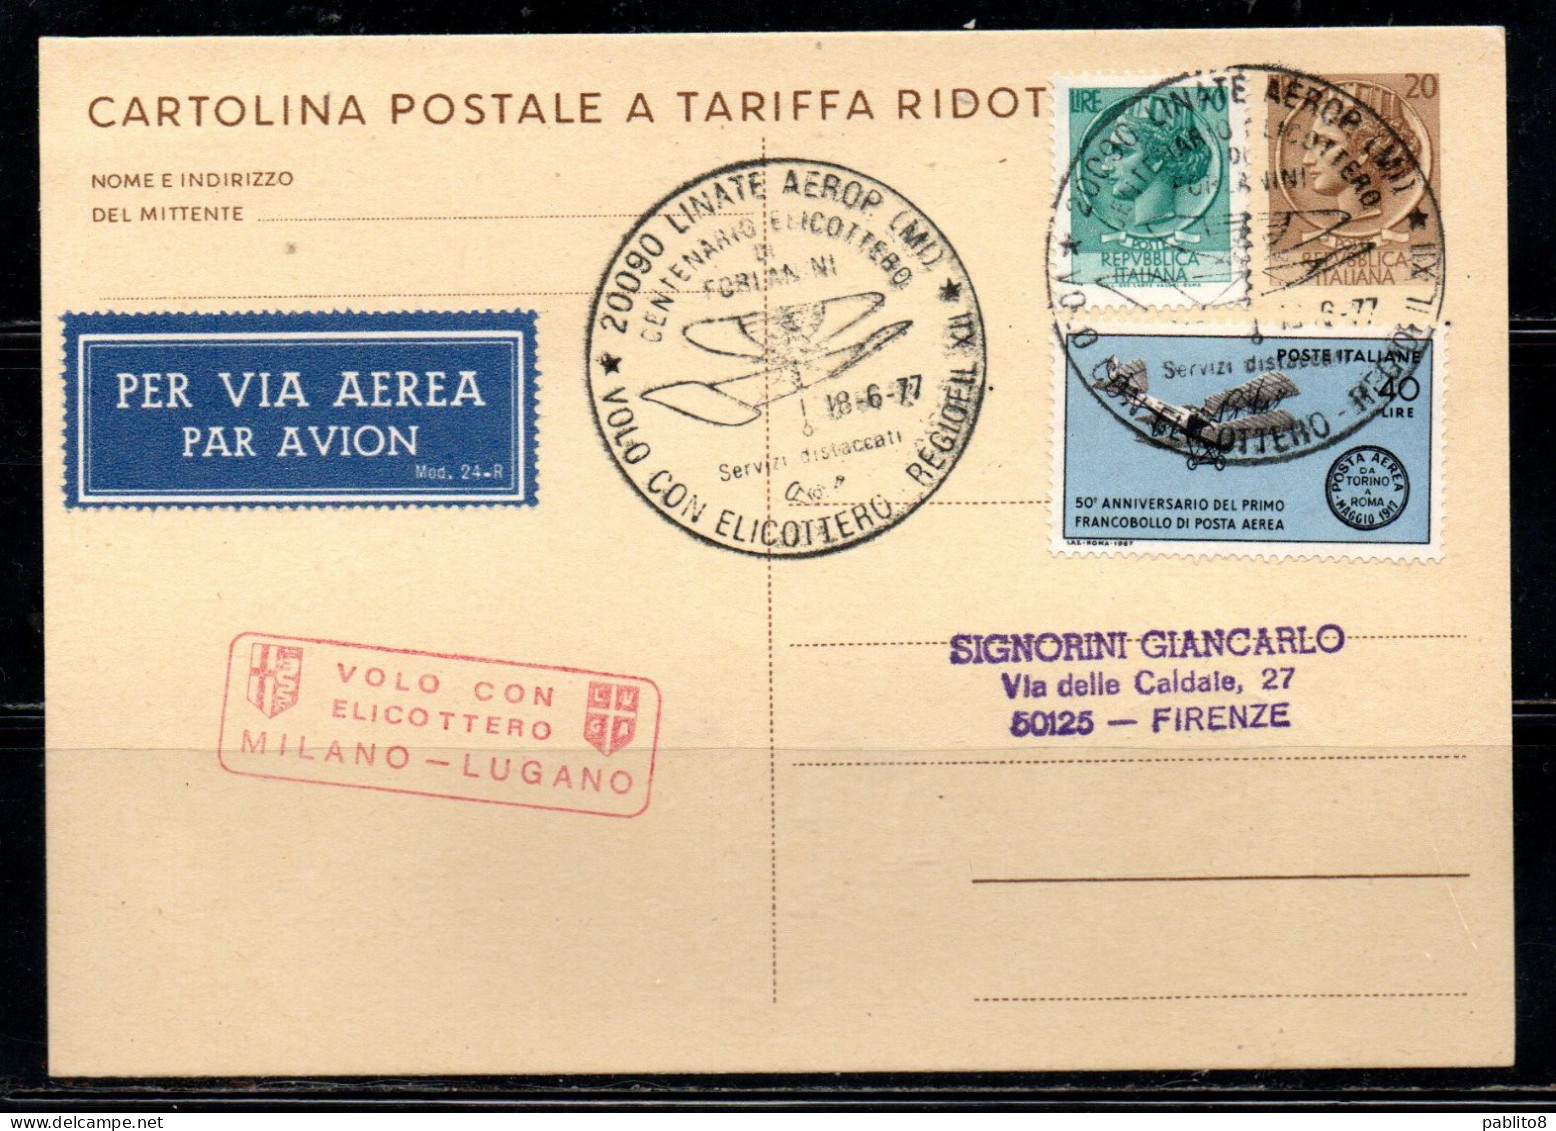 ITALIA REPUBBLICA ITALY REPUBLIC CARTOLINA POSTALE 18-6-1977 VOLO CON ELICOTTERO MILANO - LUGANO FORLANINI VIAGGIATA - Interi Postali